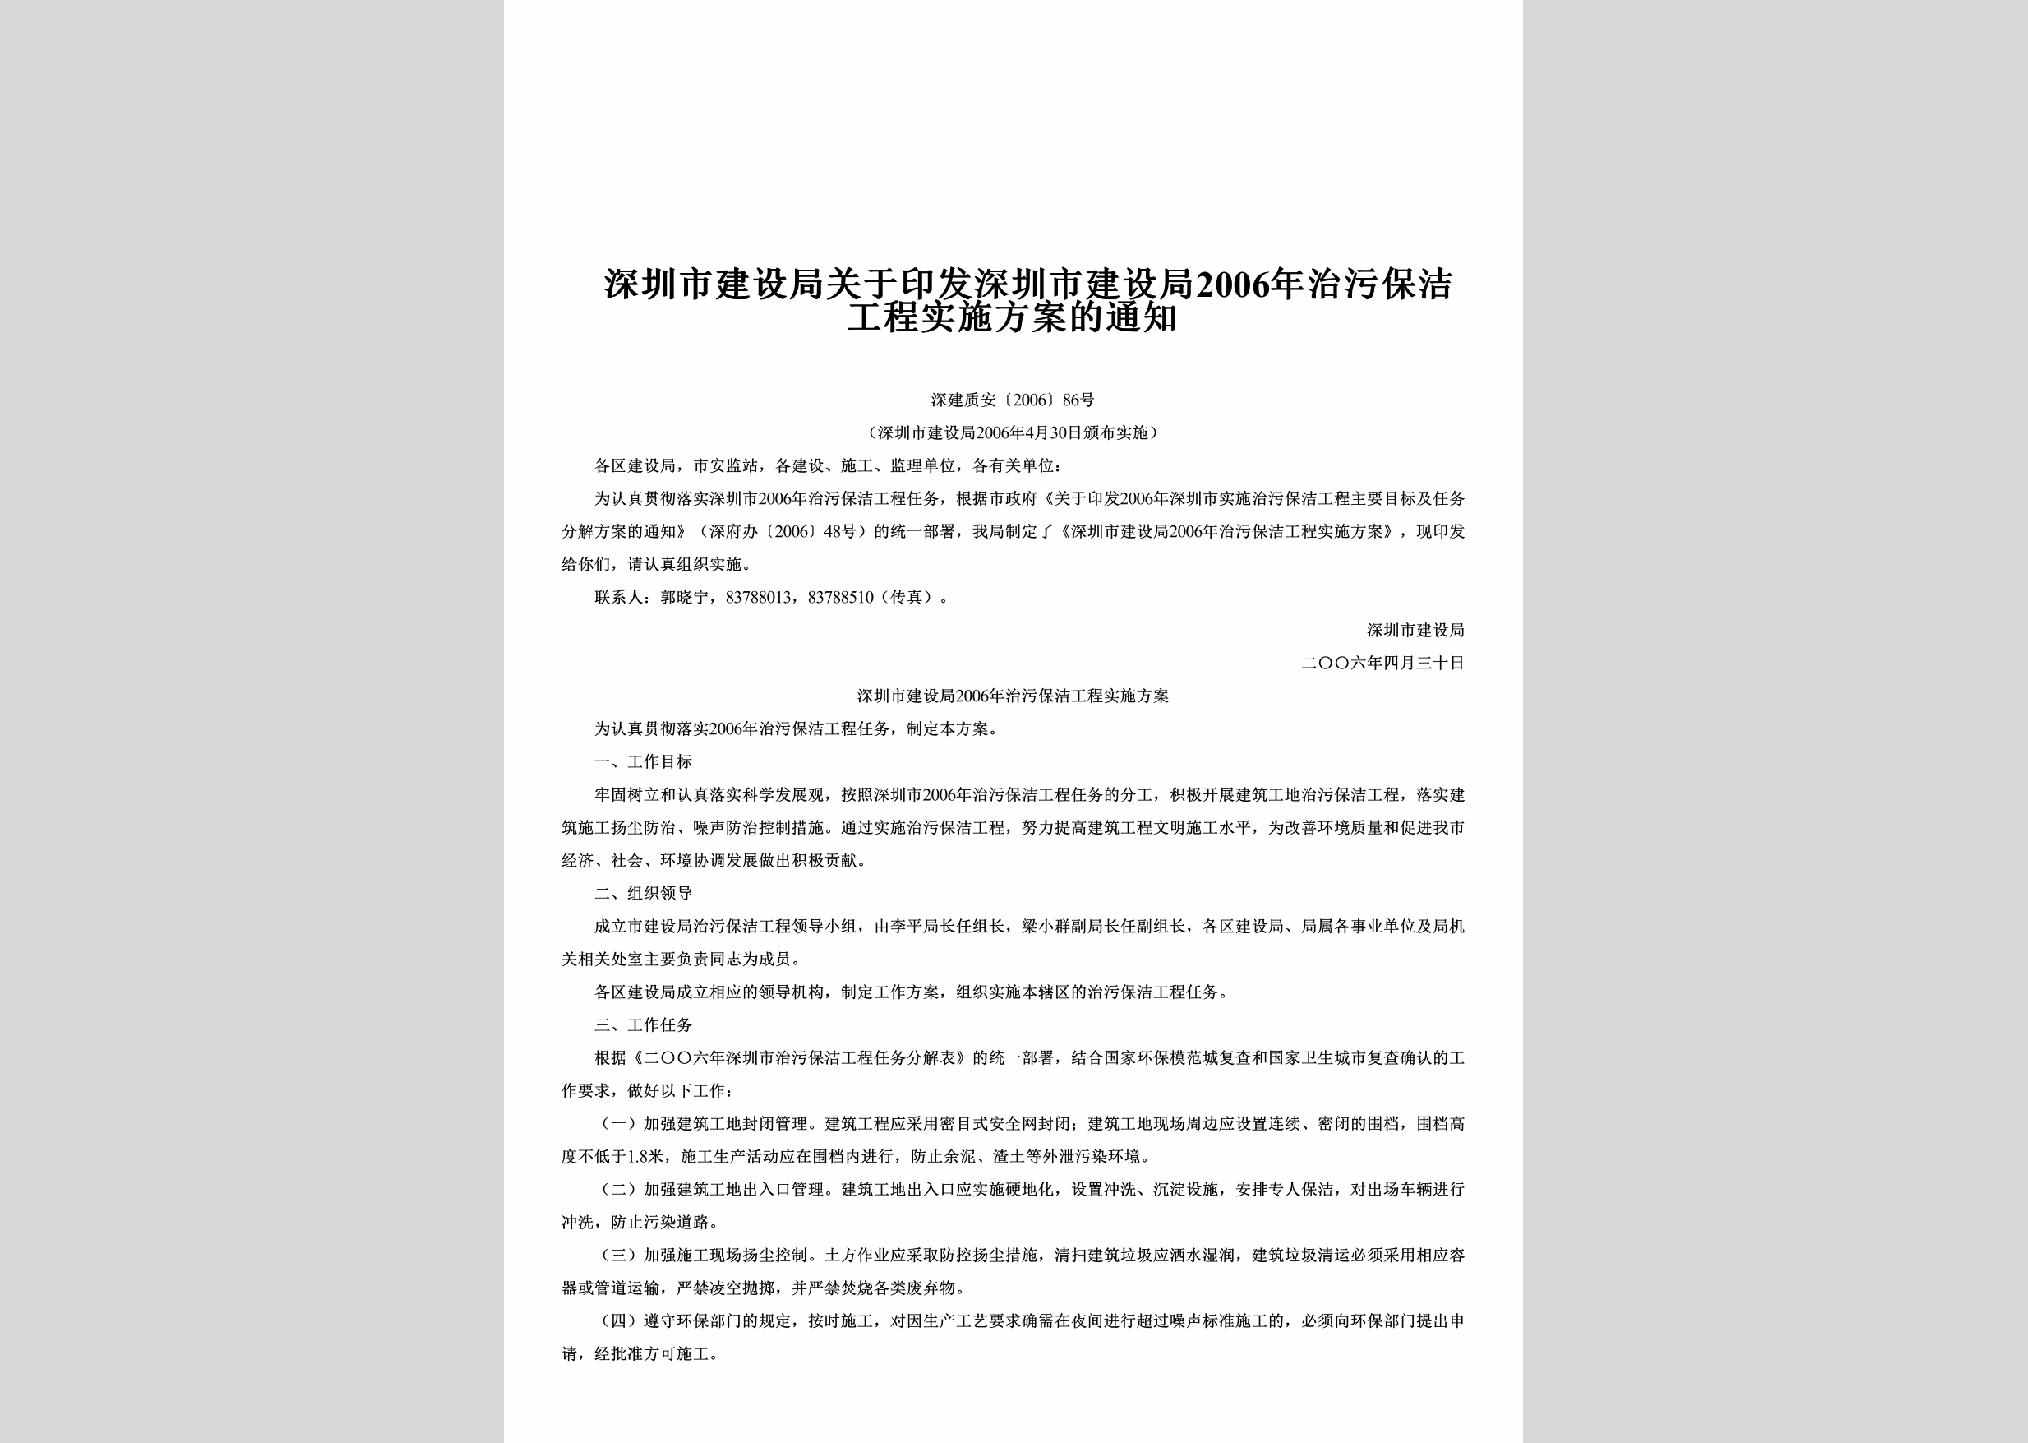 深建质安[2006]86号：关于印发深圳市建设局2006年治污保洁工程实施方案的通知